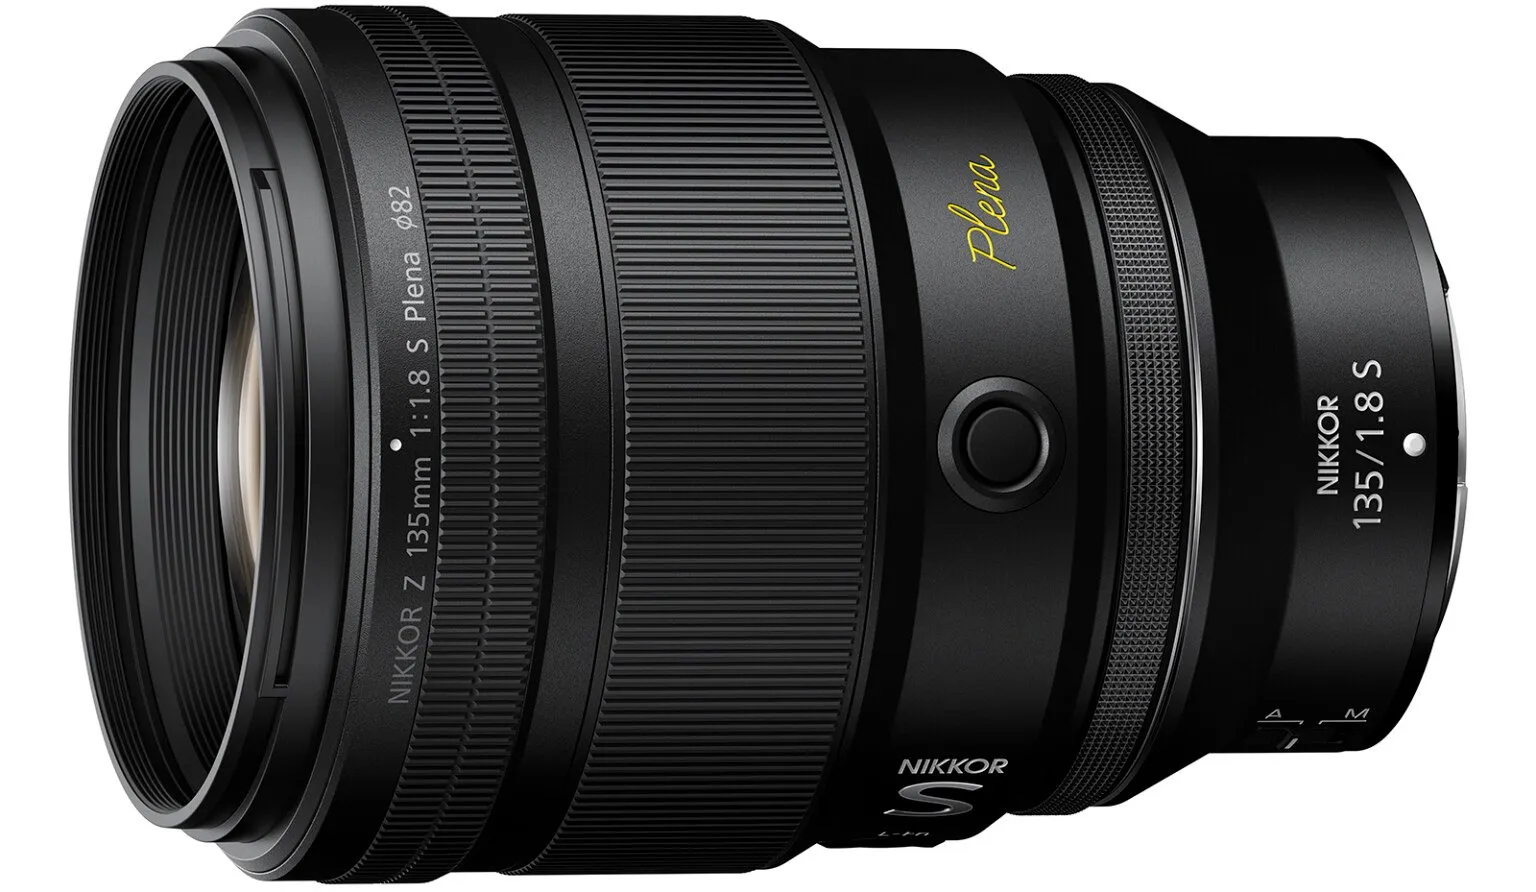 Nikon ra mắt ống kính Nikkor Z 135mm F1.8 S Plena với khẩu độ mở rộng cho bokeh hoàn hảo